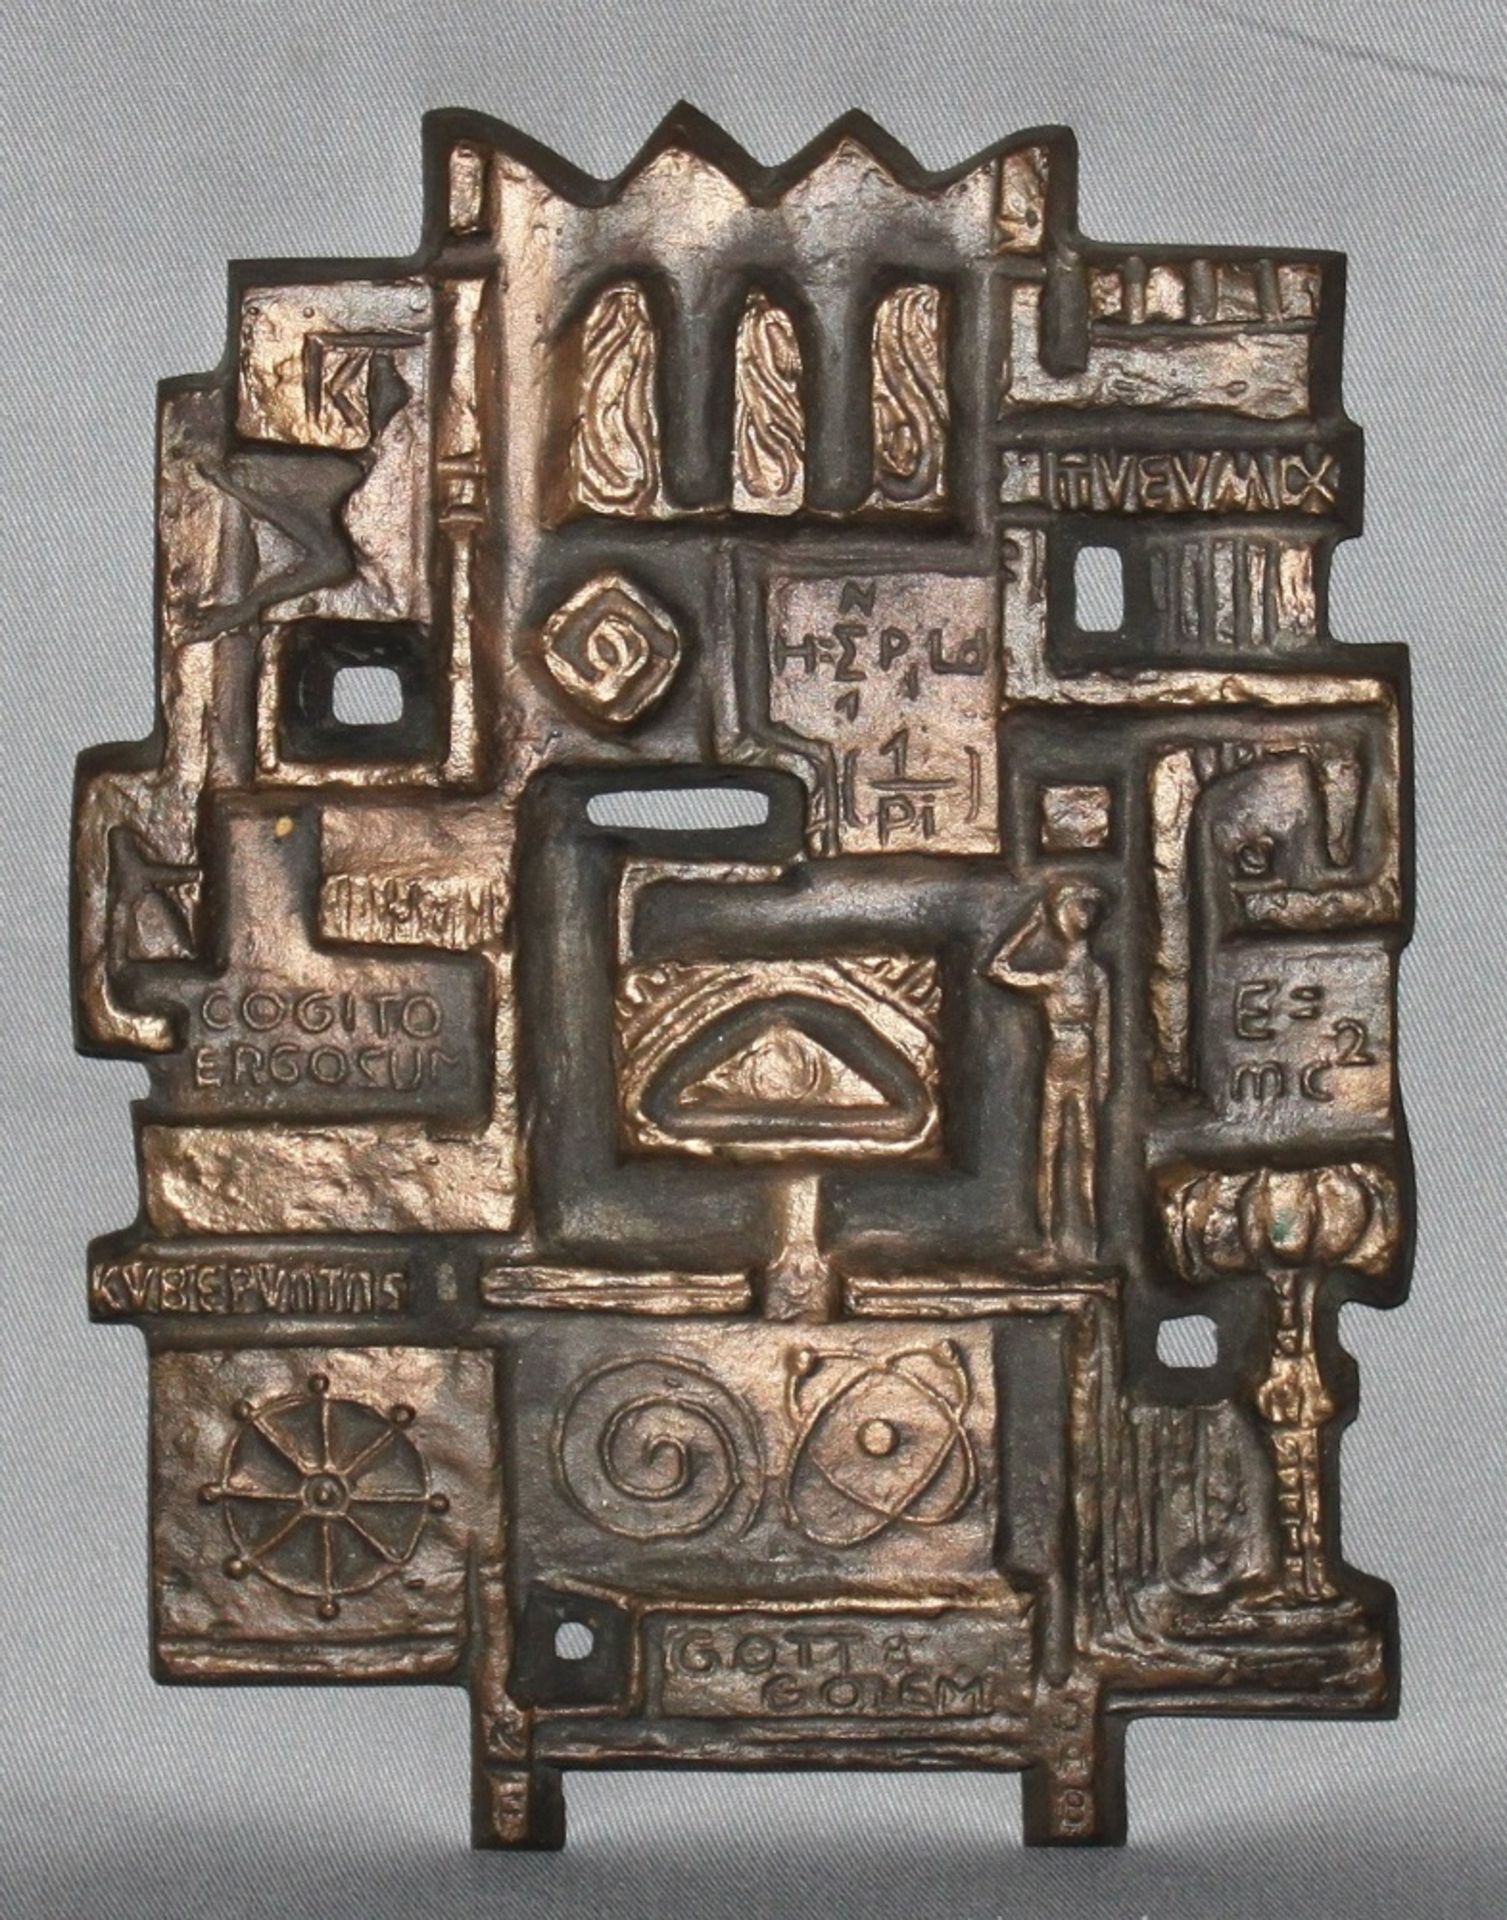 Metall. Eisenkunstguss mit bronzierter Oberfläche. Franke, K. “Gott und Golem“. Reliefplatte mit 7